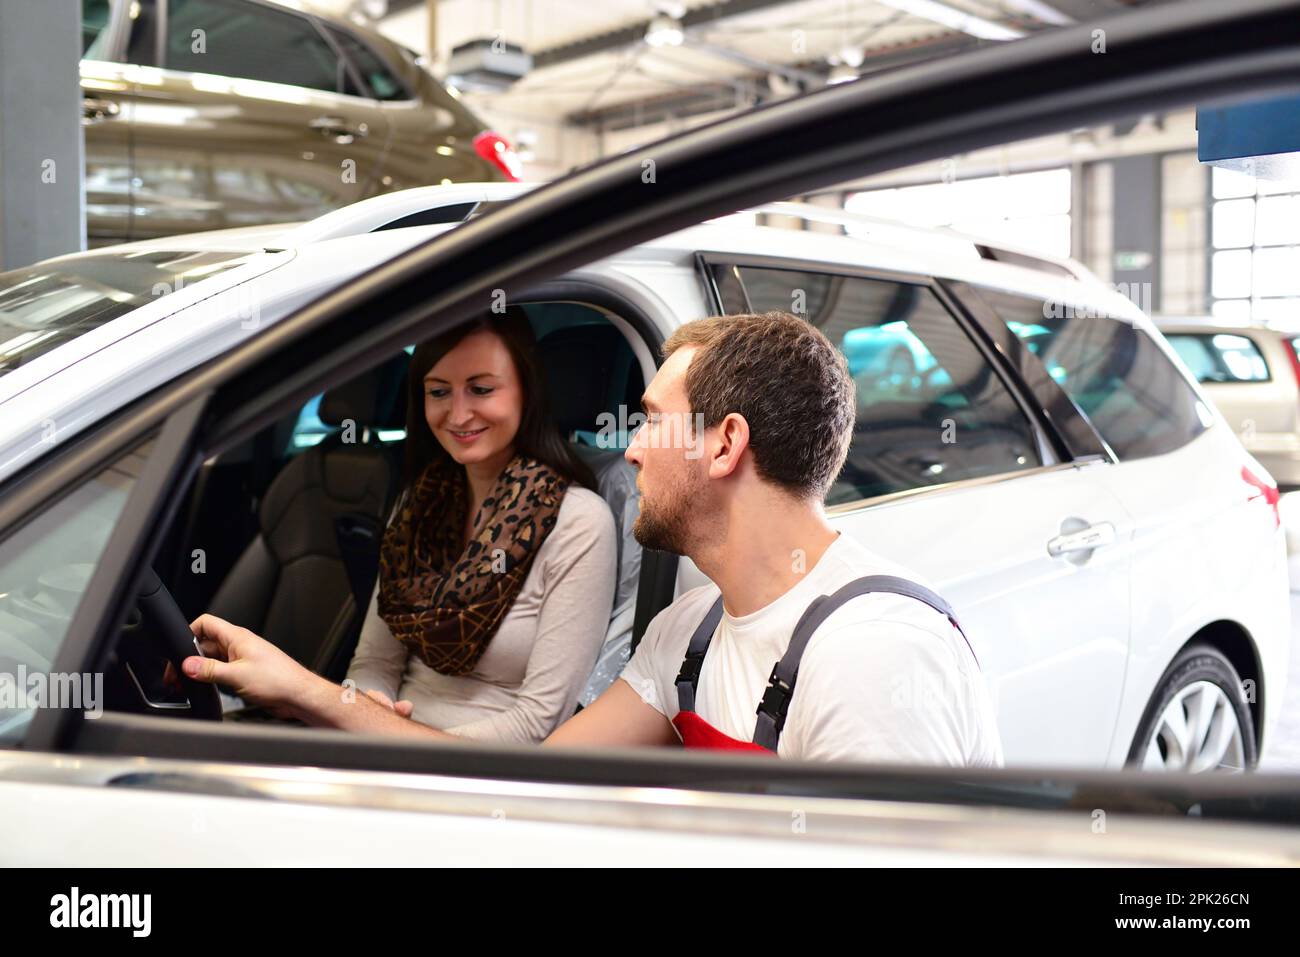 Kundendienst in einer Garage - Mechaniker und der Frau die Reparatur eines Fahrzeugs besprechen Stockfoto